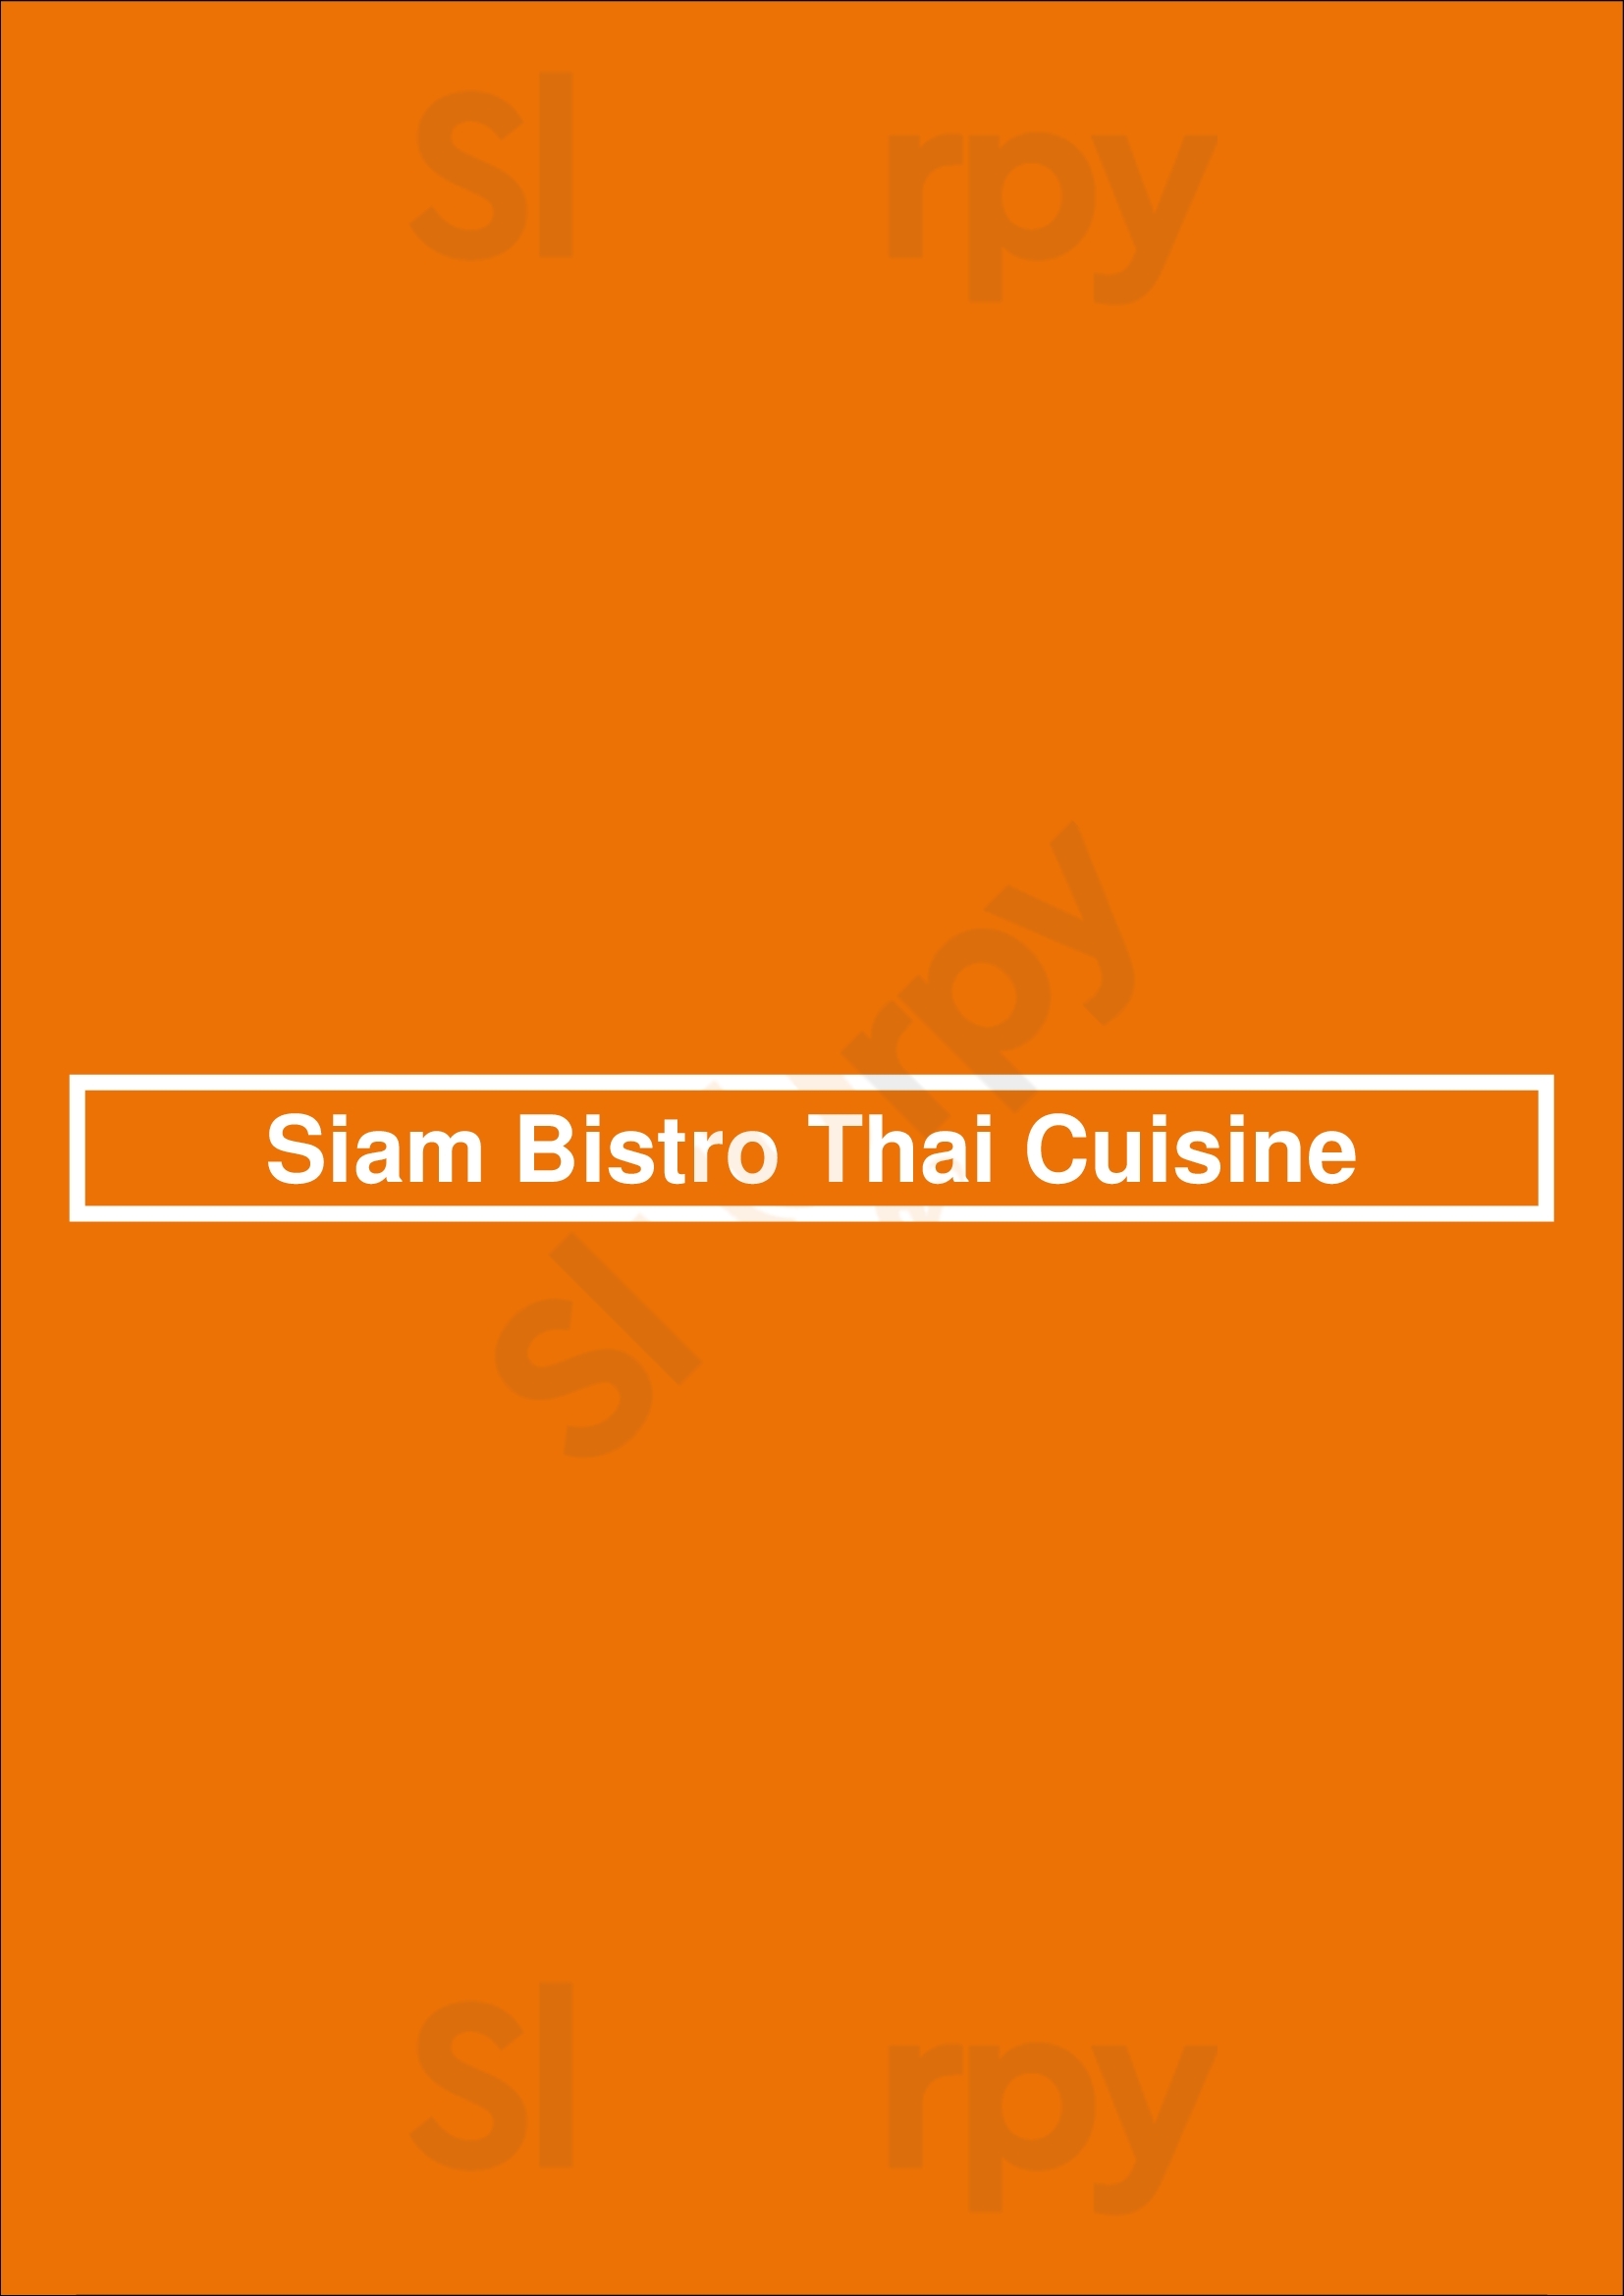 Siam Bistro Thai Cuisine Boston Menu - 1